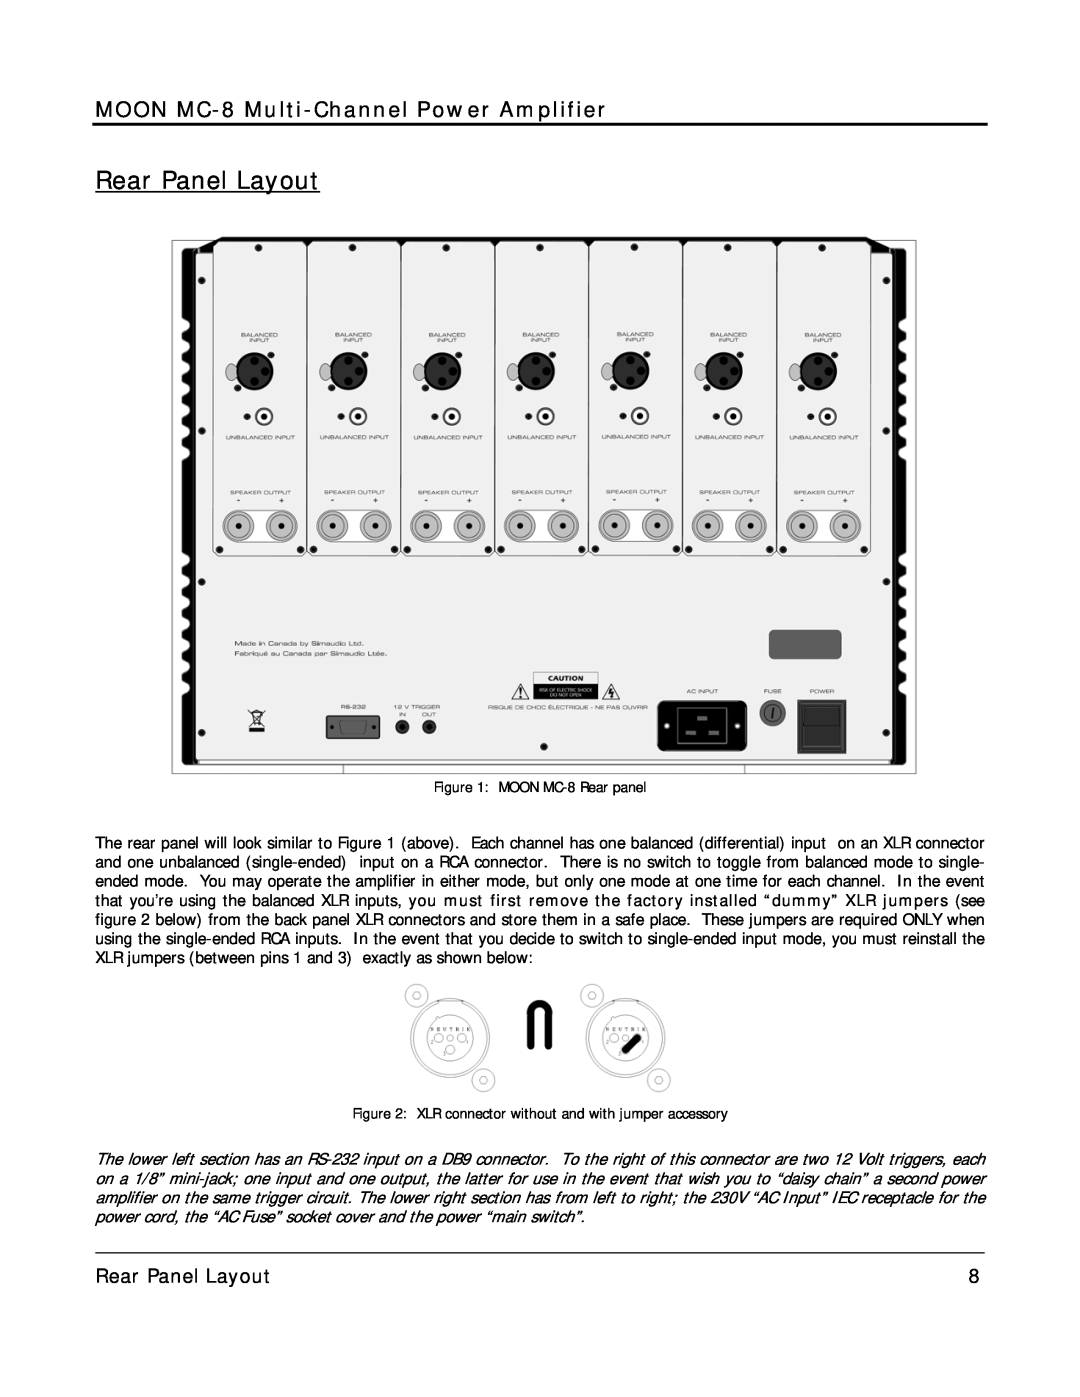 Simaudio owner manual Rear Panel Layout, MOON MC-8 Multi-ChannelPower Amplifier, MOON MC-8Rear panel 